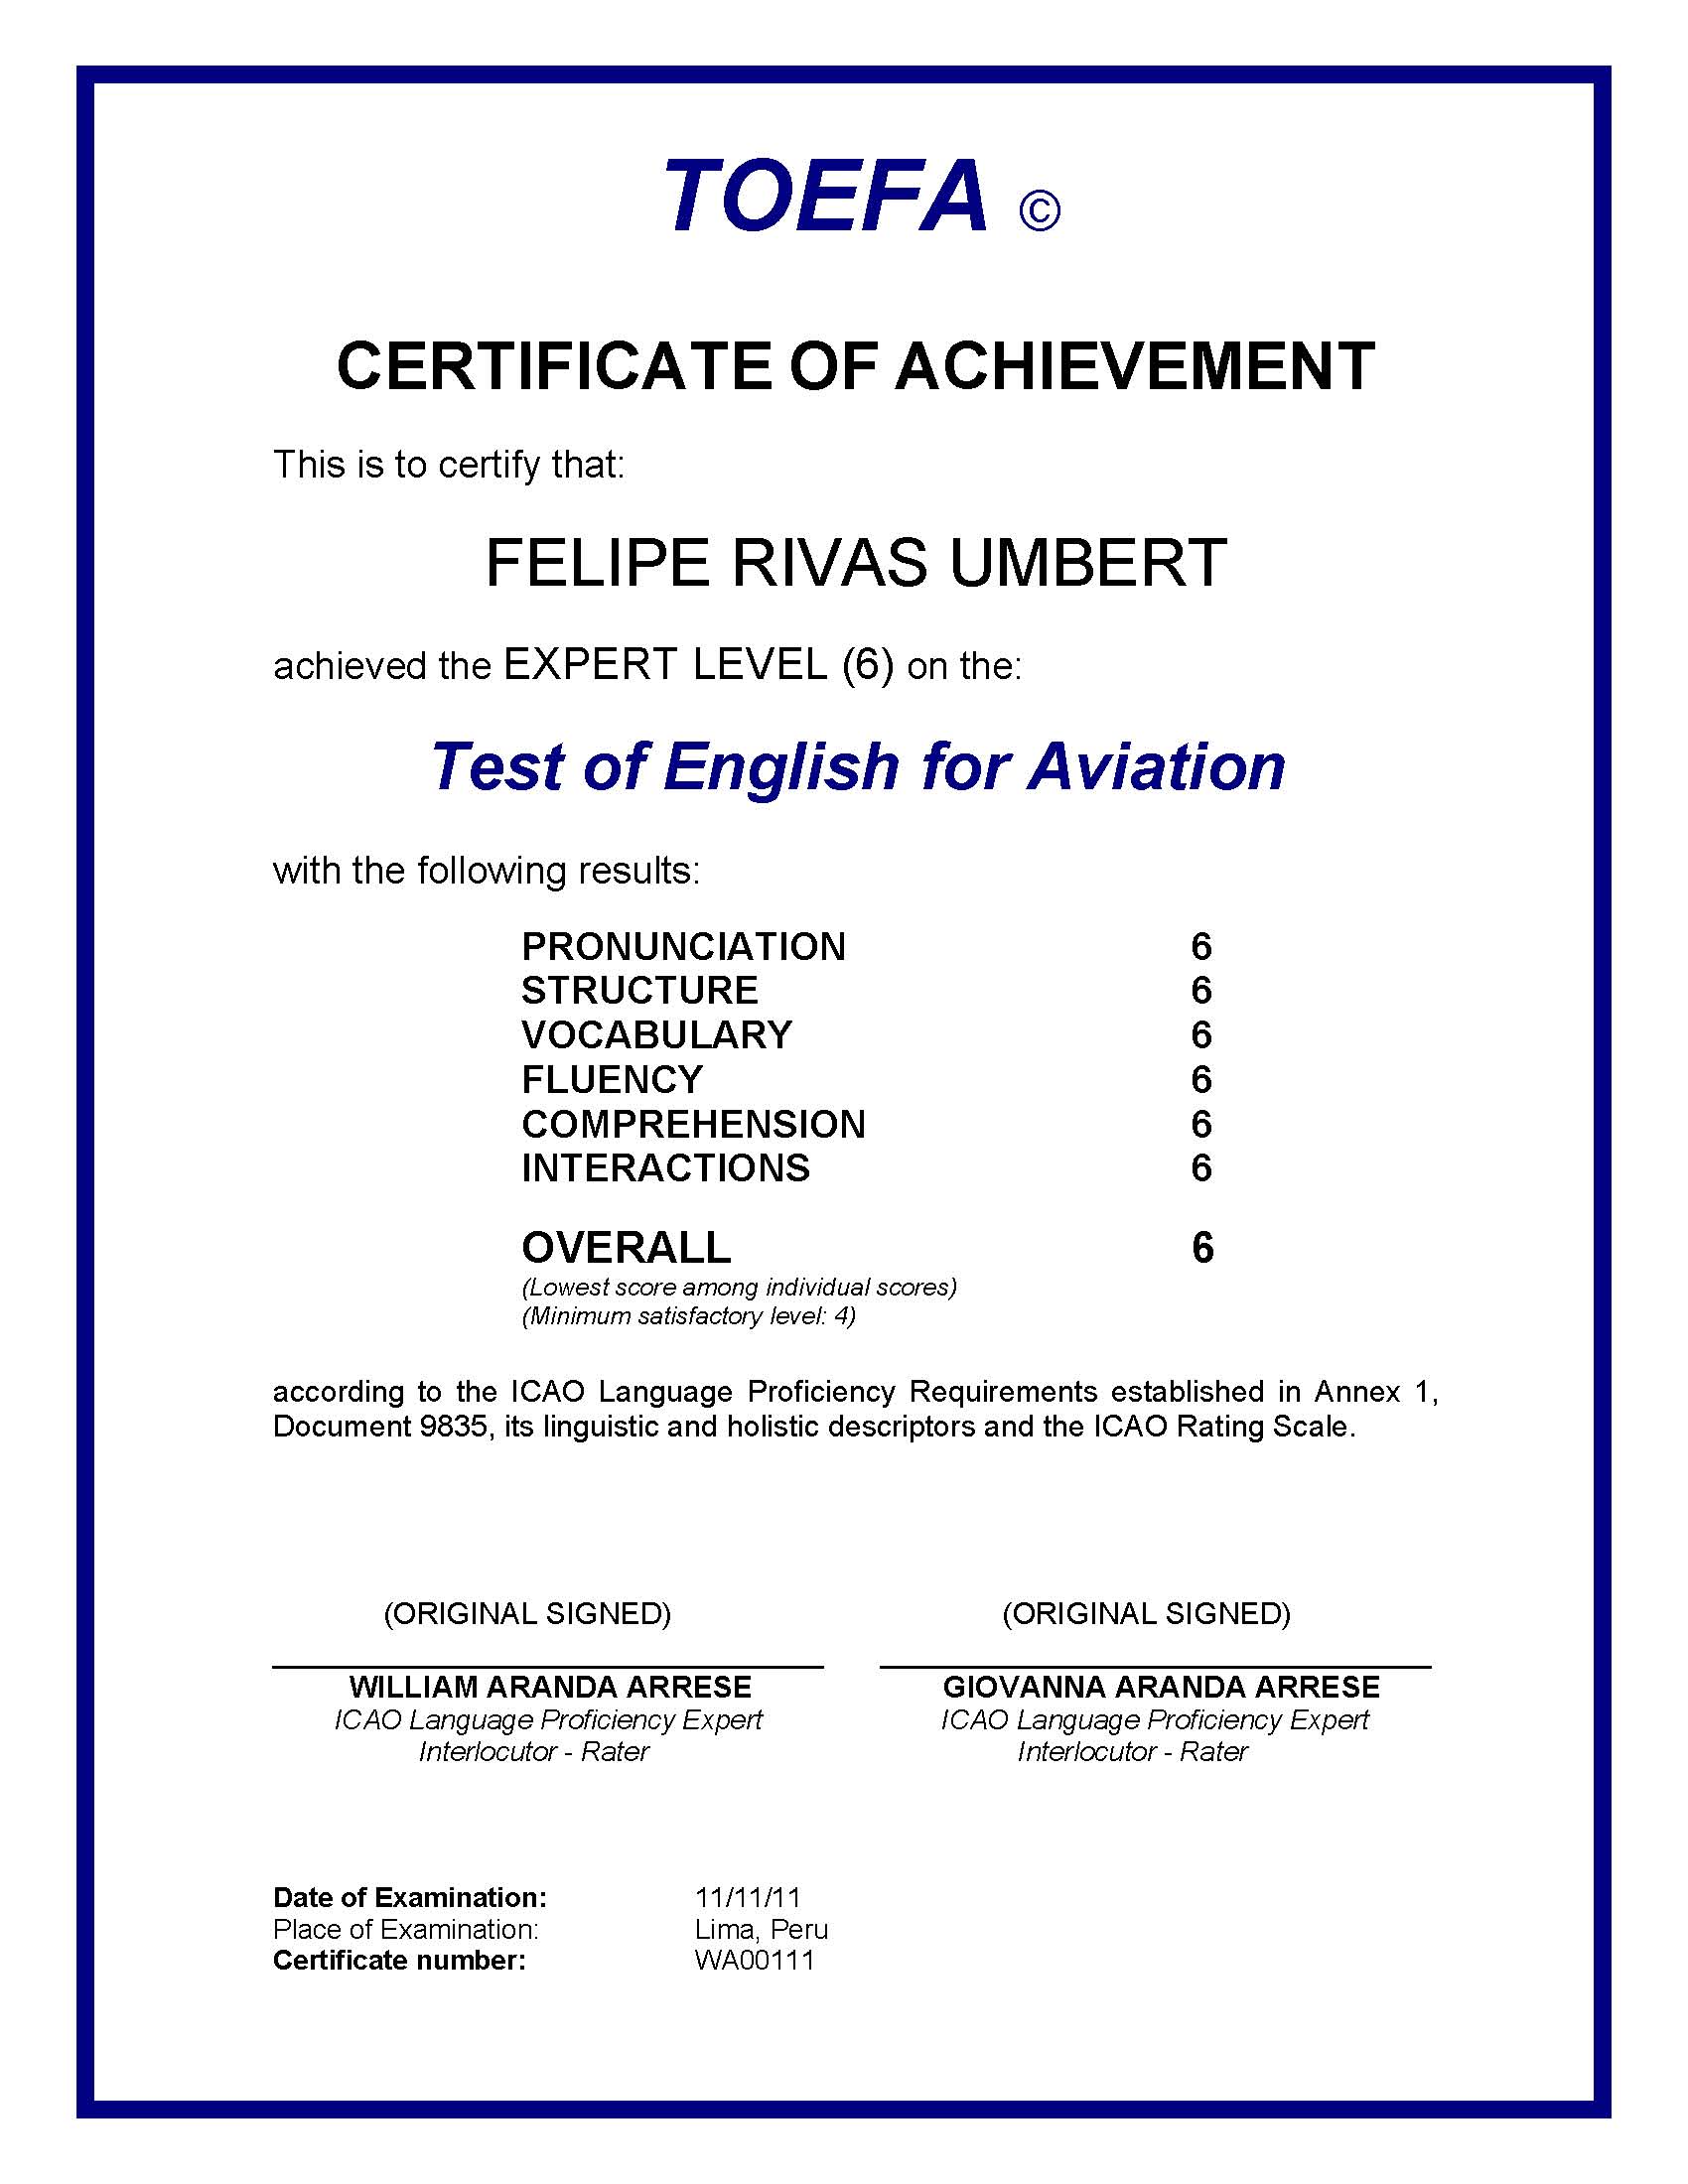 TOEFA Certificate